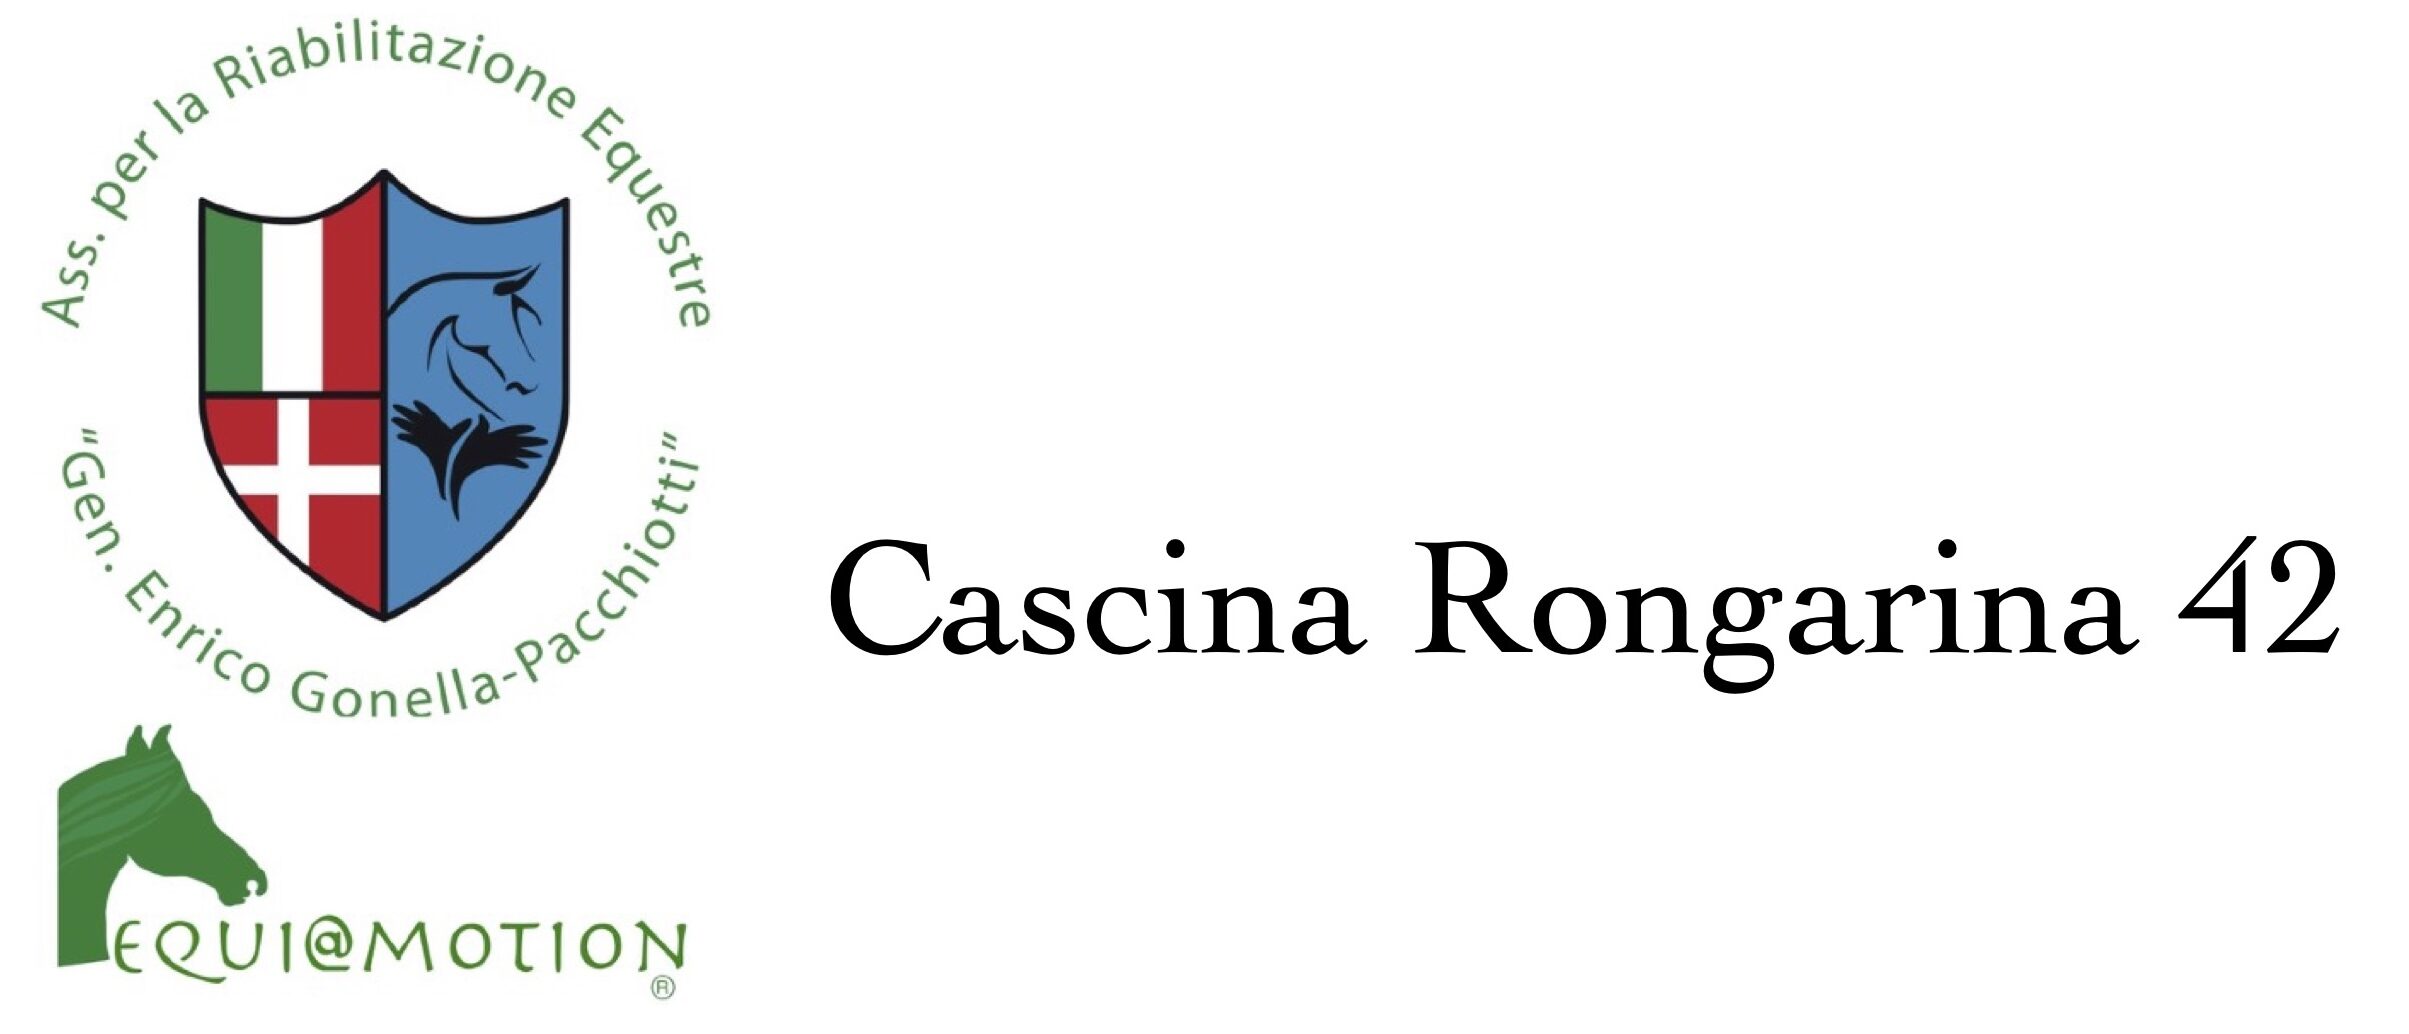 Cascina Rongarina 42